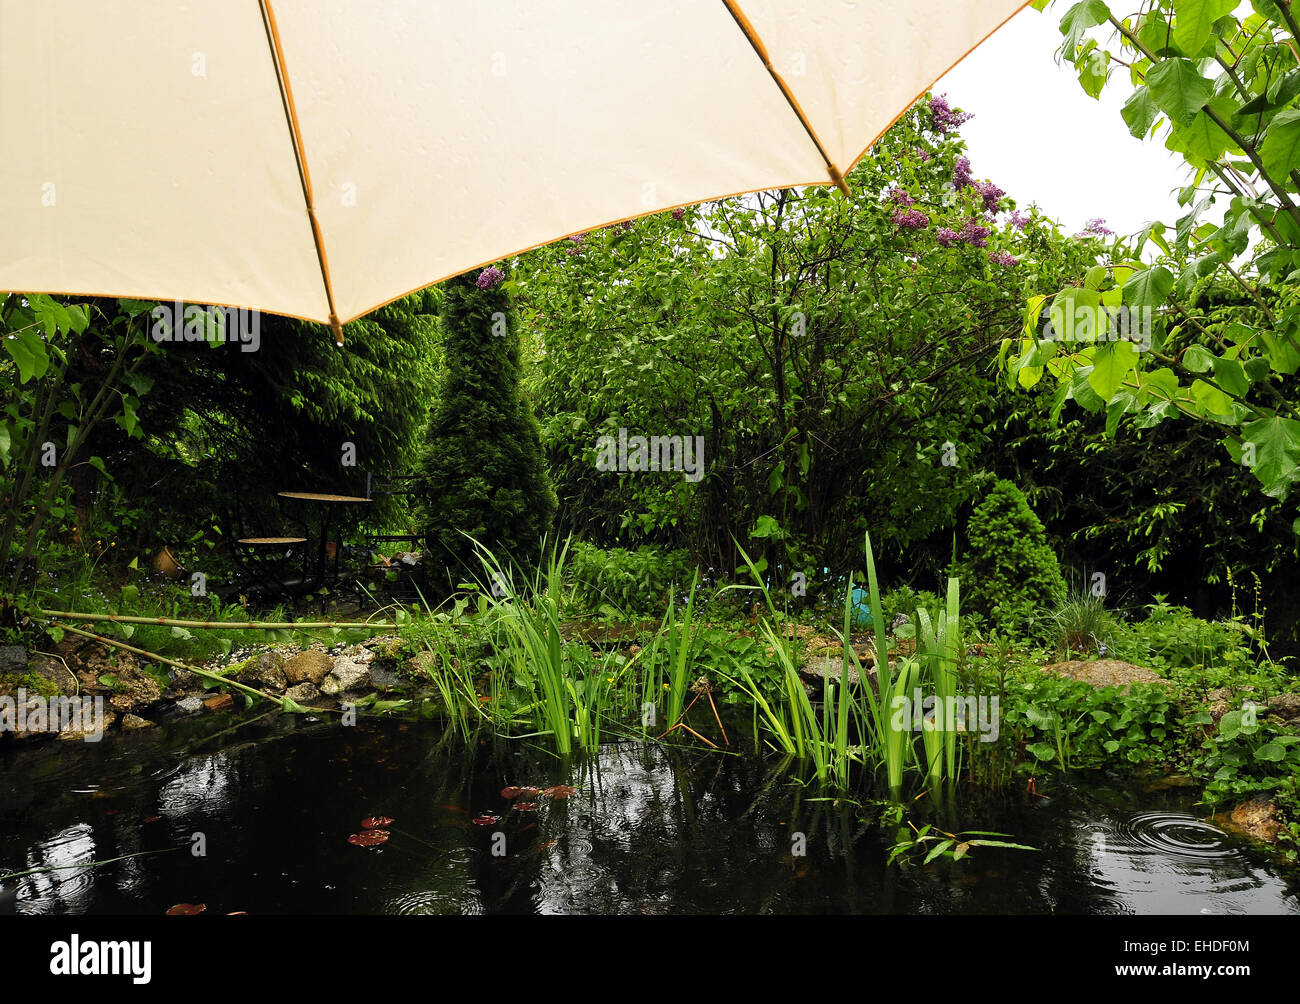 Garden pond in the rain garden weather Stock Photo